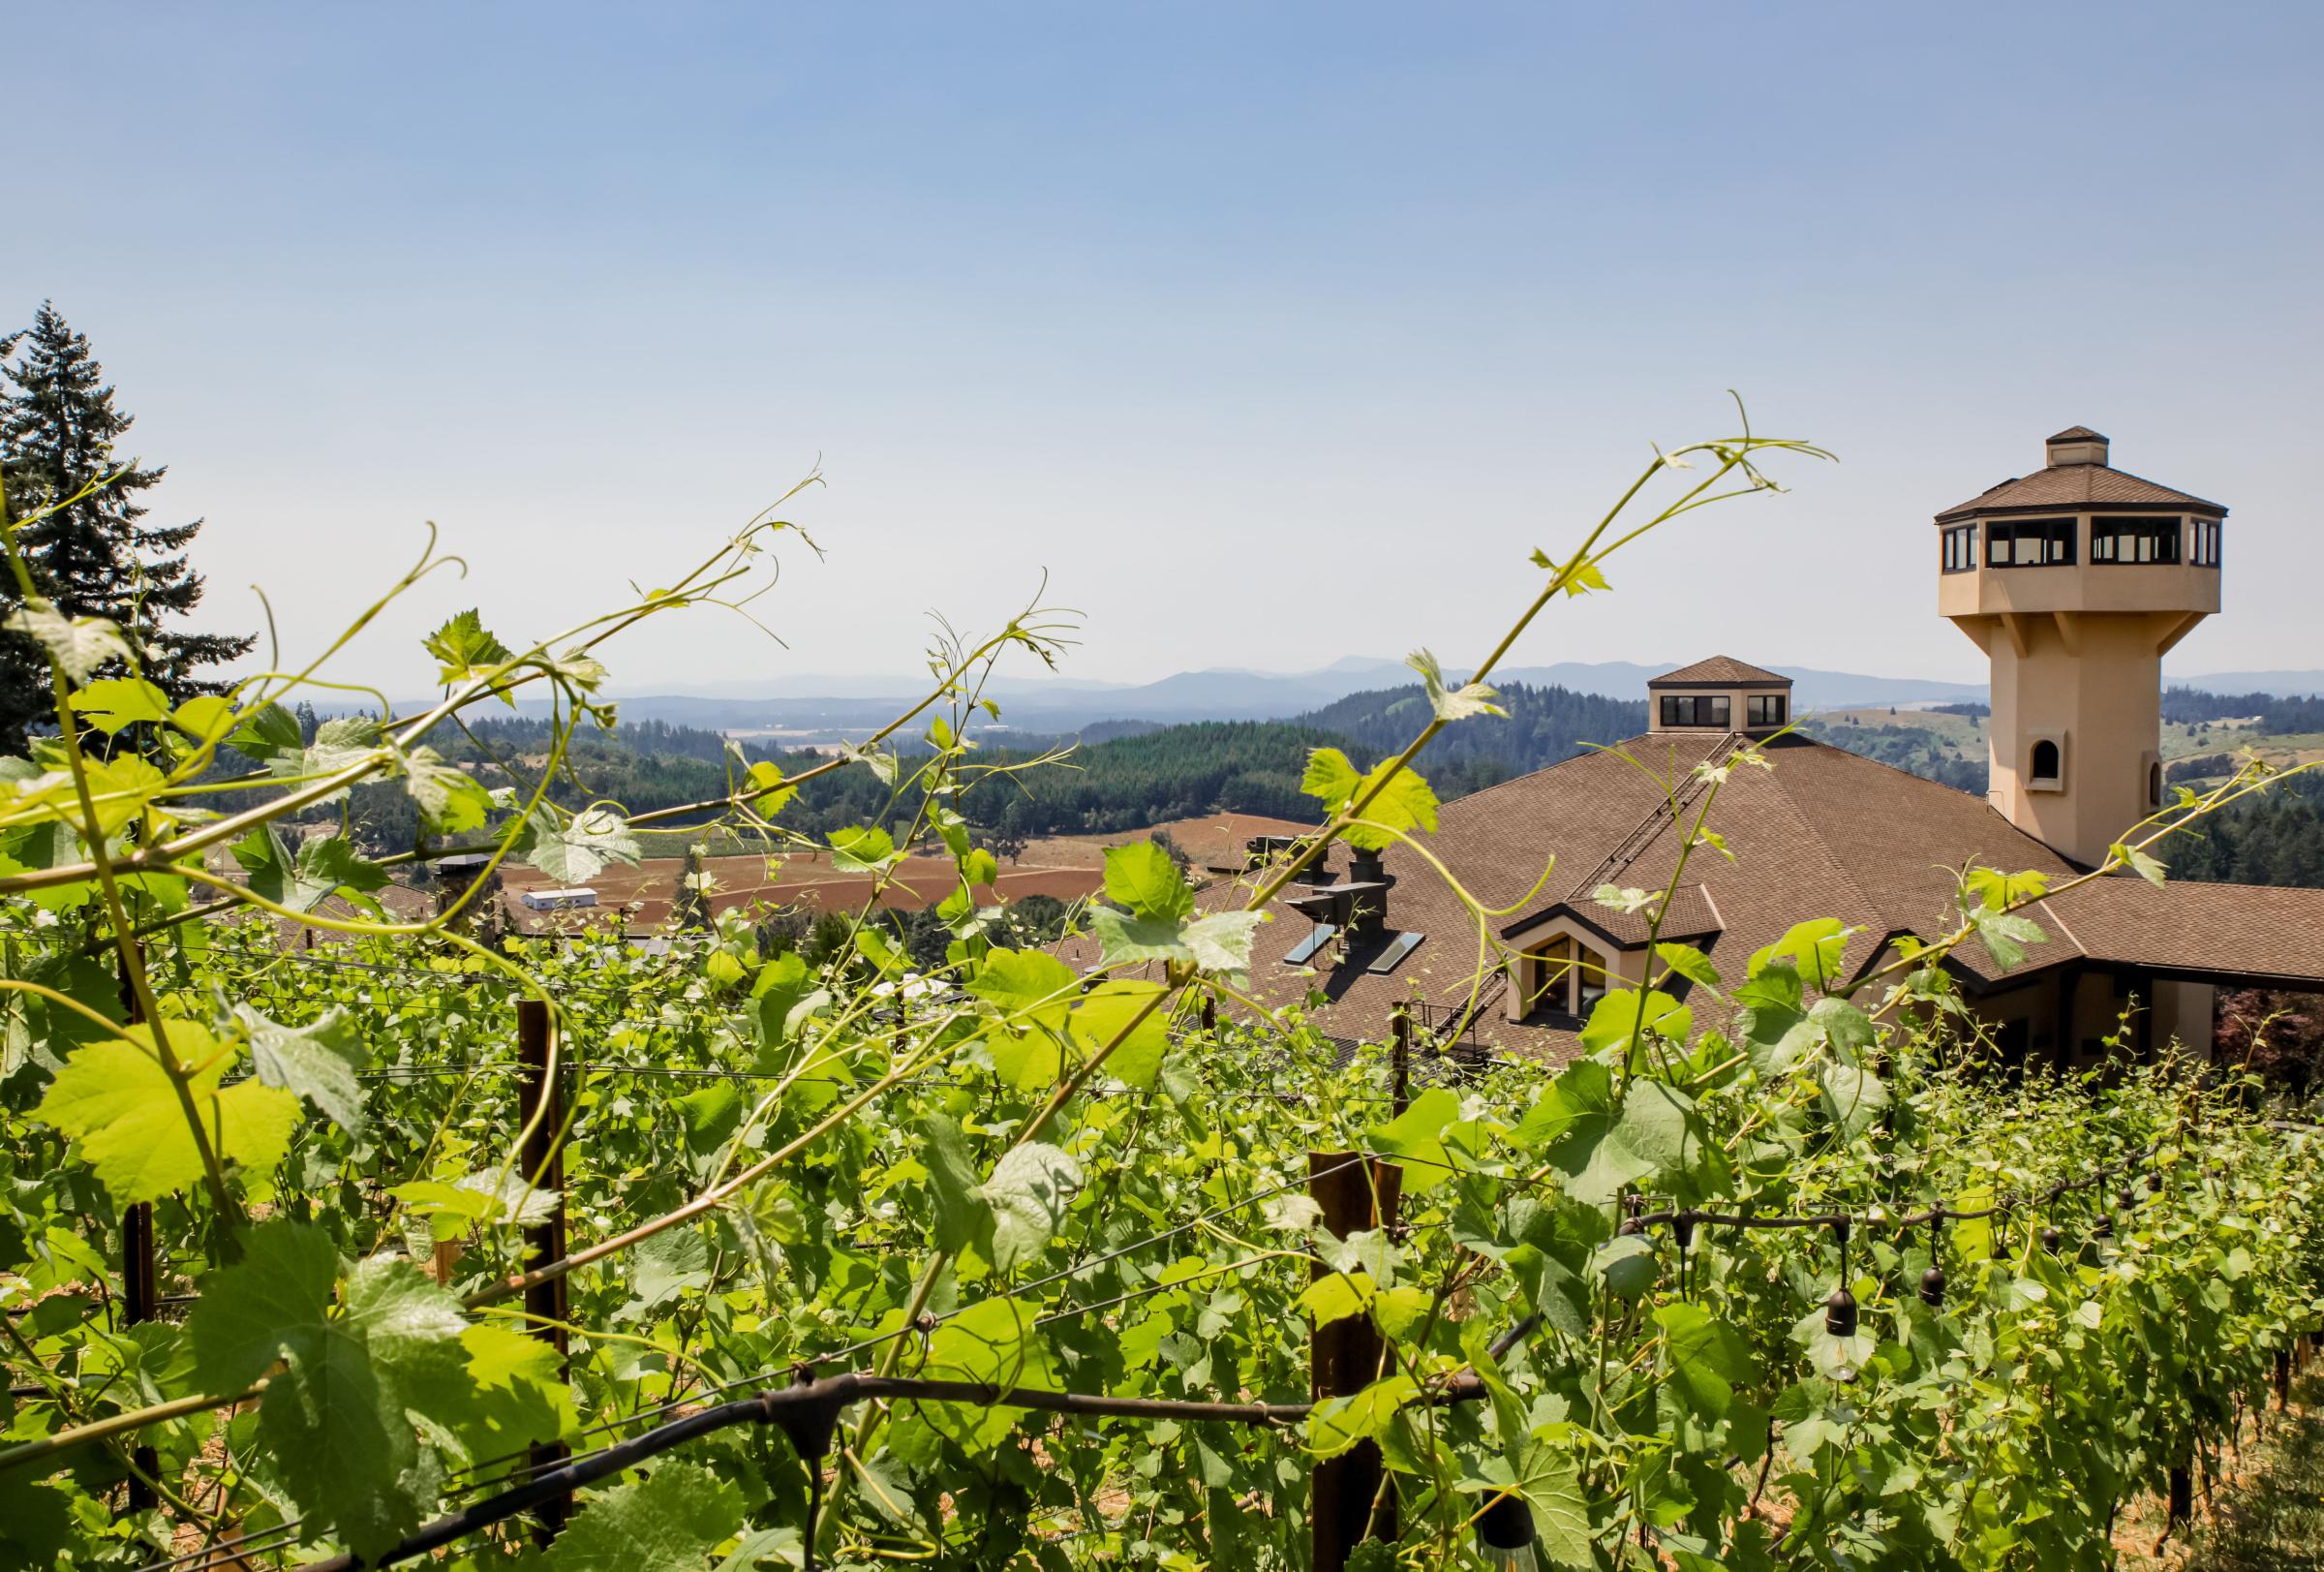 Vines at Willamette Valley Vineyards on June 29, 2021.